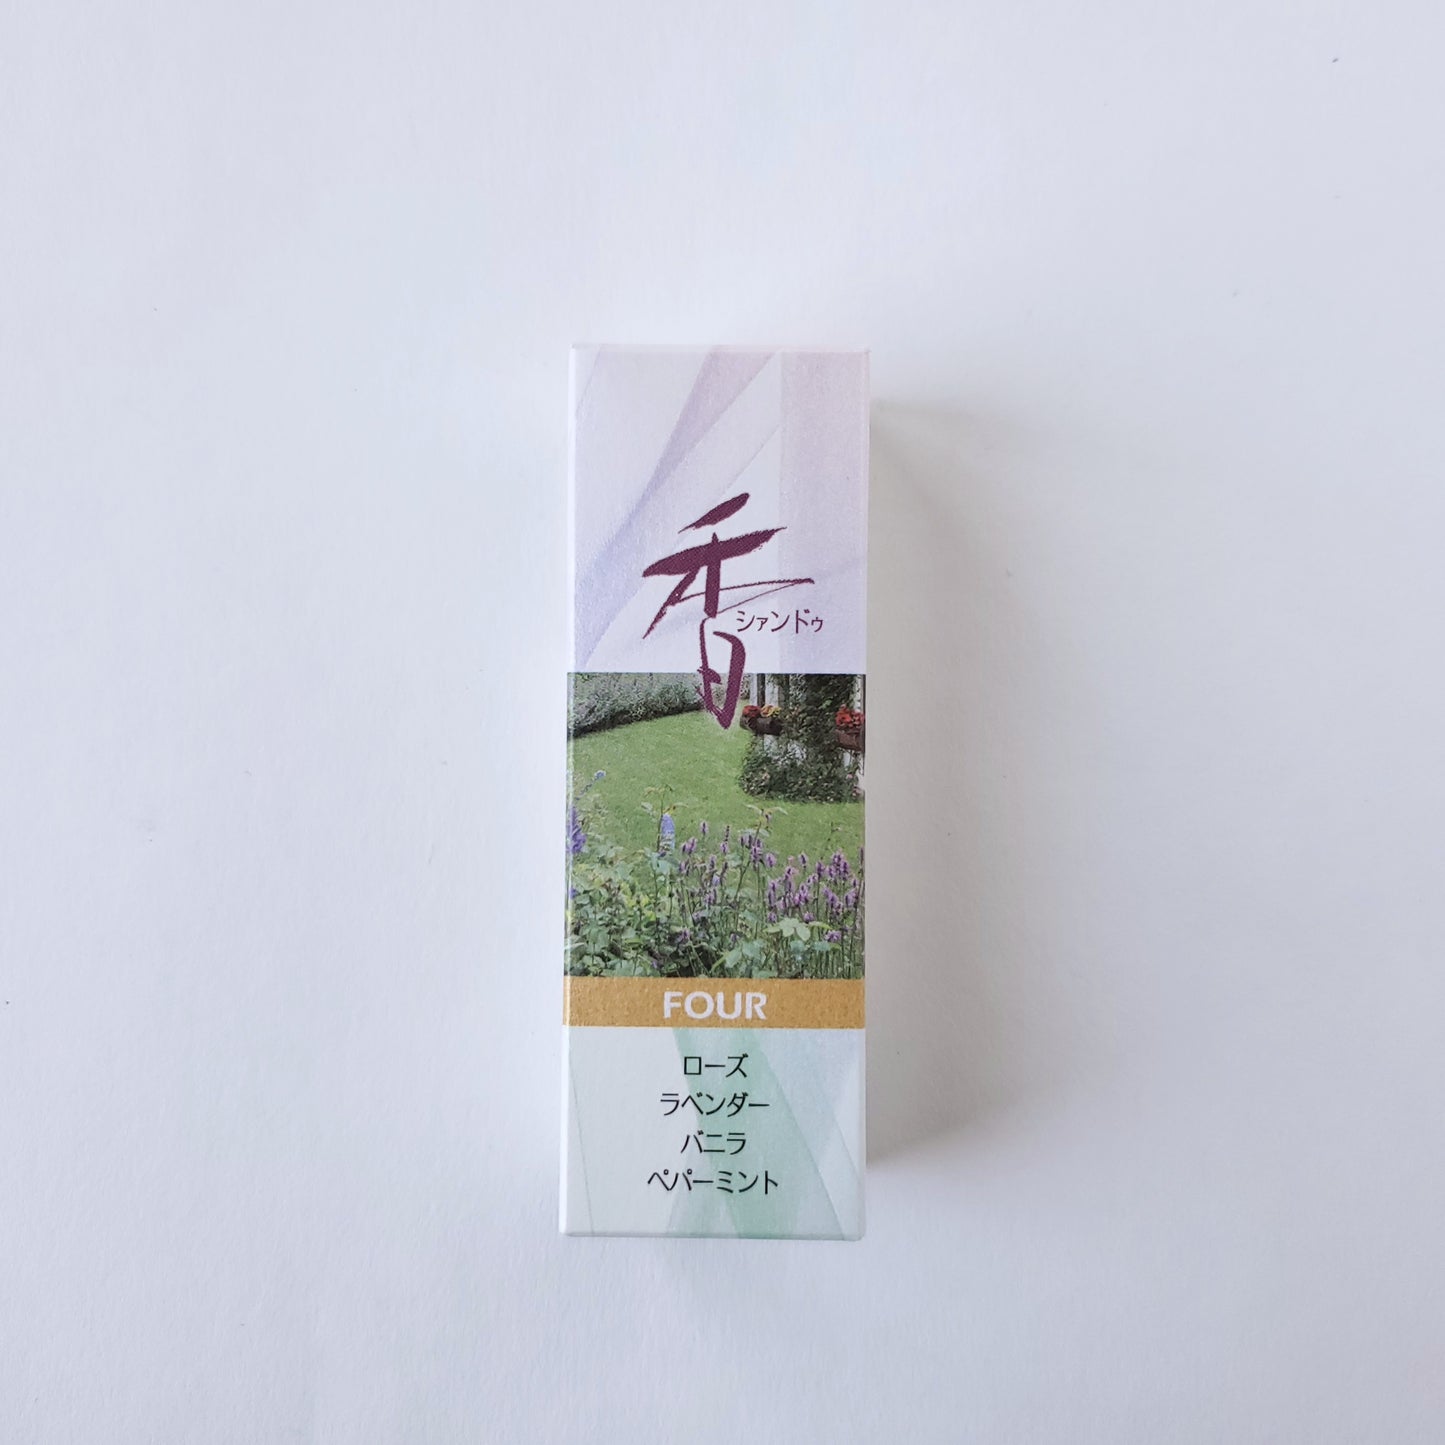 松栄堂のお香 シァンドゥ・FOUR Xiang Do 京都 スティック アロマ インセンス 日本製